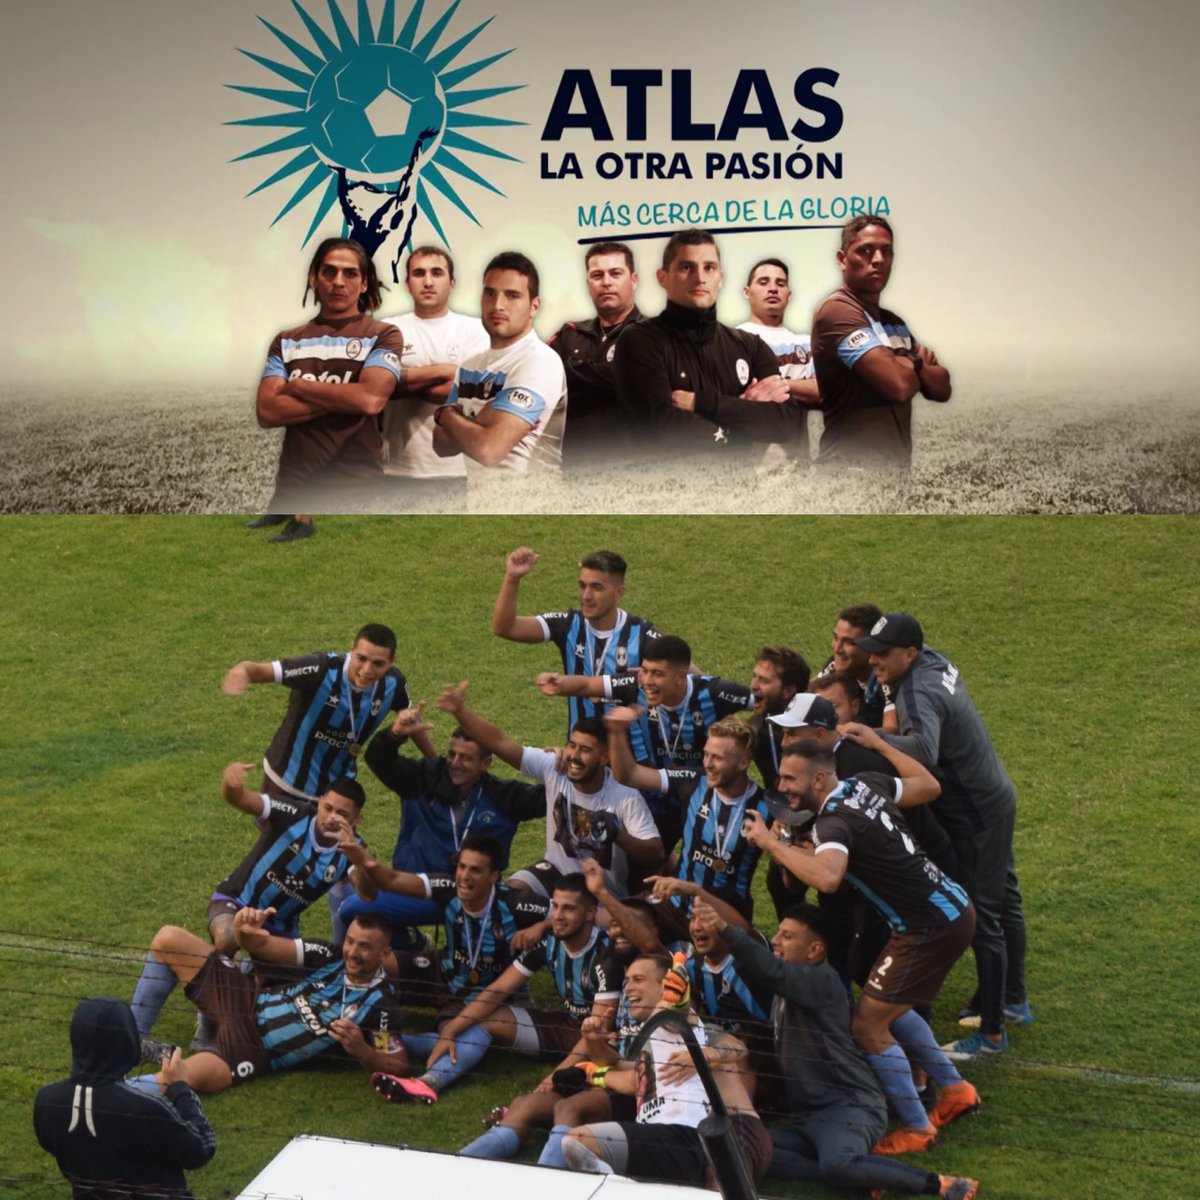 Juez Central on Twitter: "Lindo día en el ascenso argentino. Atlas, aquel  equipo que muchos seguimos por años por Fox, en "Atlas, la otra pasión",  ascendió por primera vez a cuarta división.